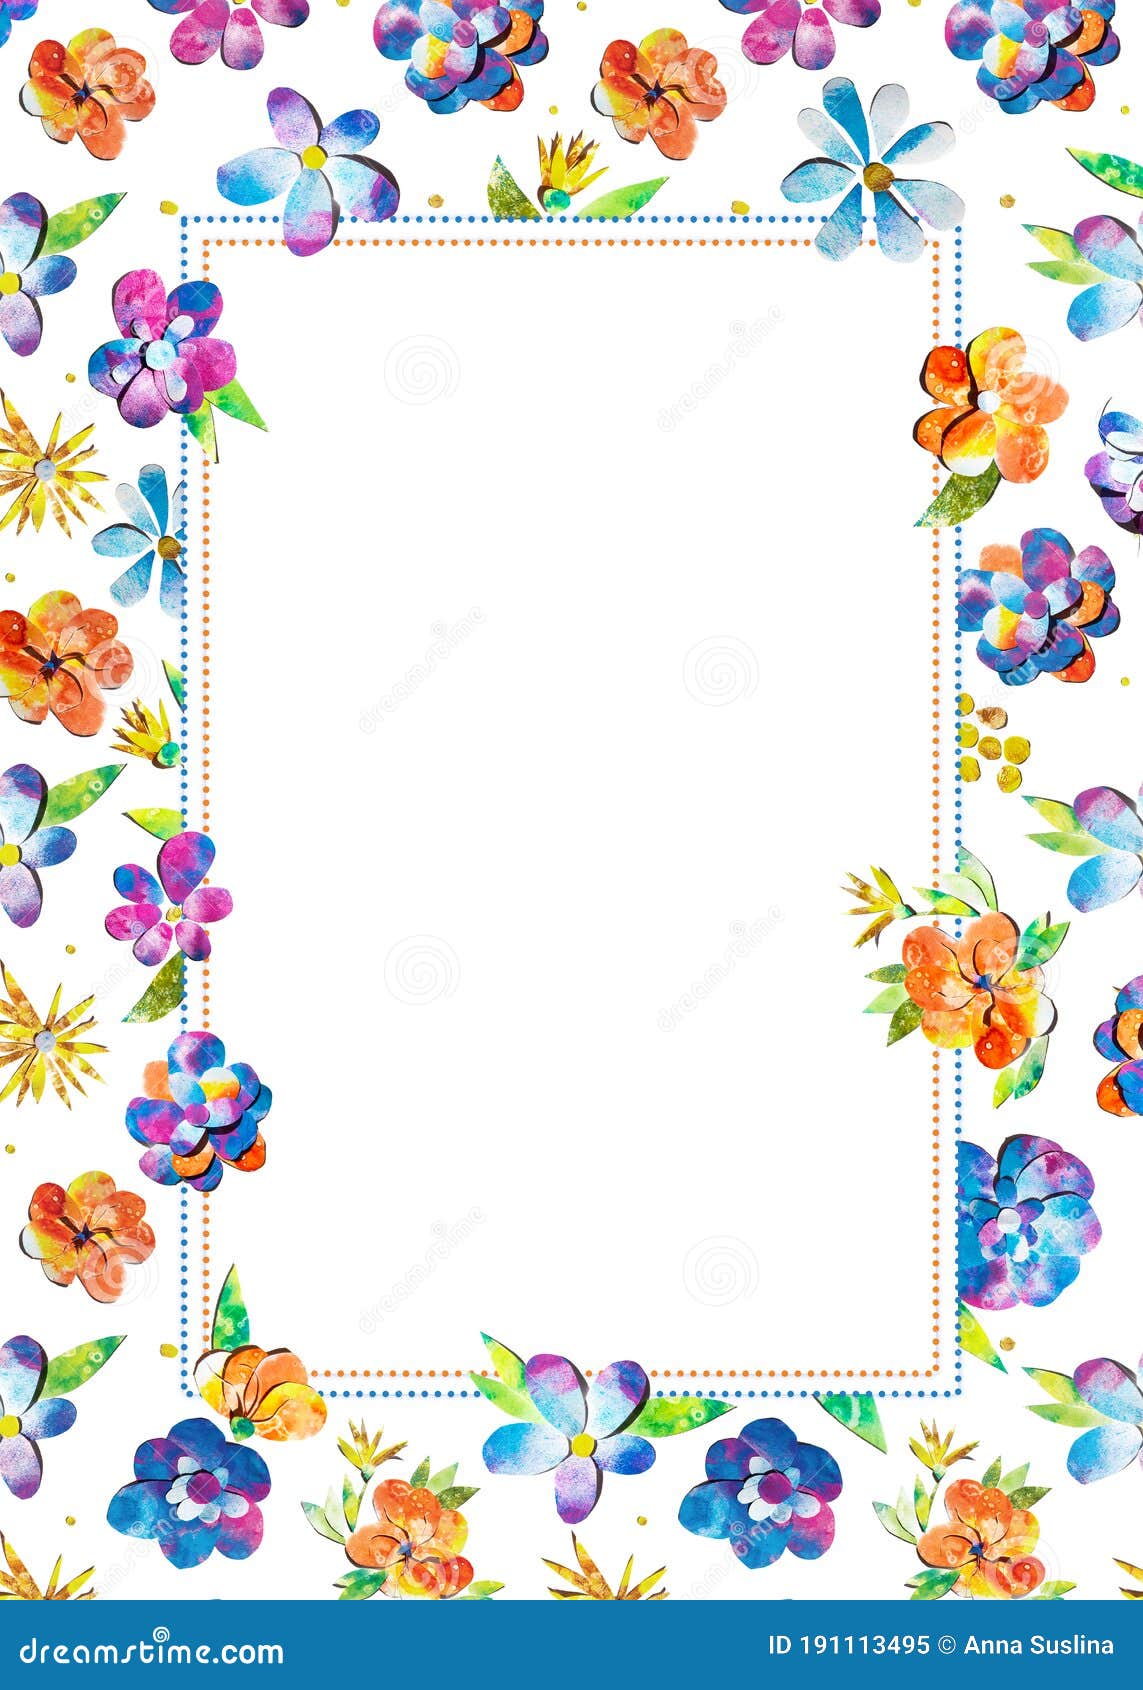 夏快彩色水彩绘花边框装饰品 A5 A3国际库存例证 插画包括有紫色 手工制造 蓝色